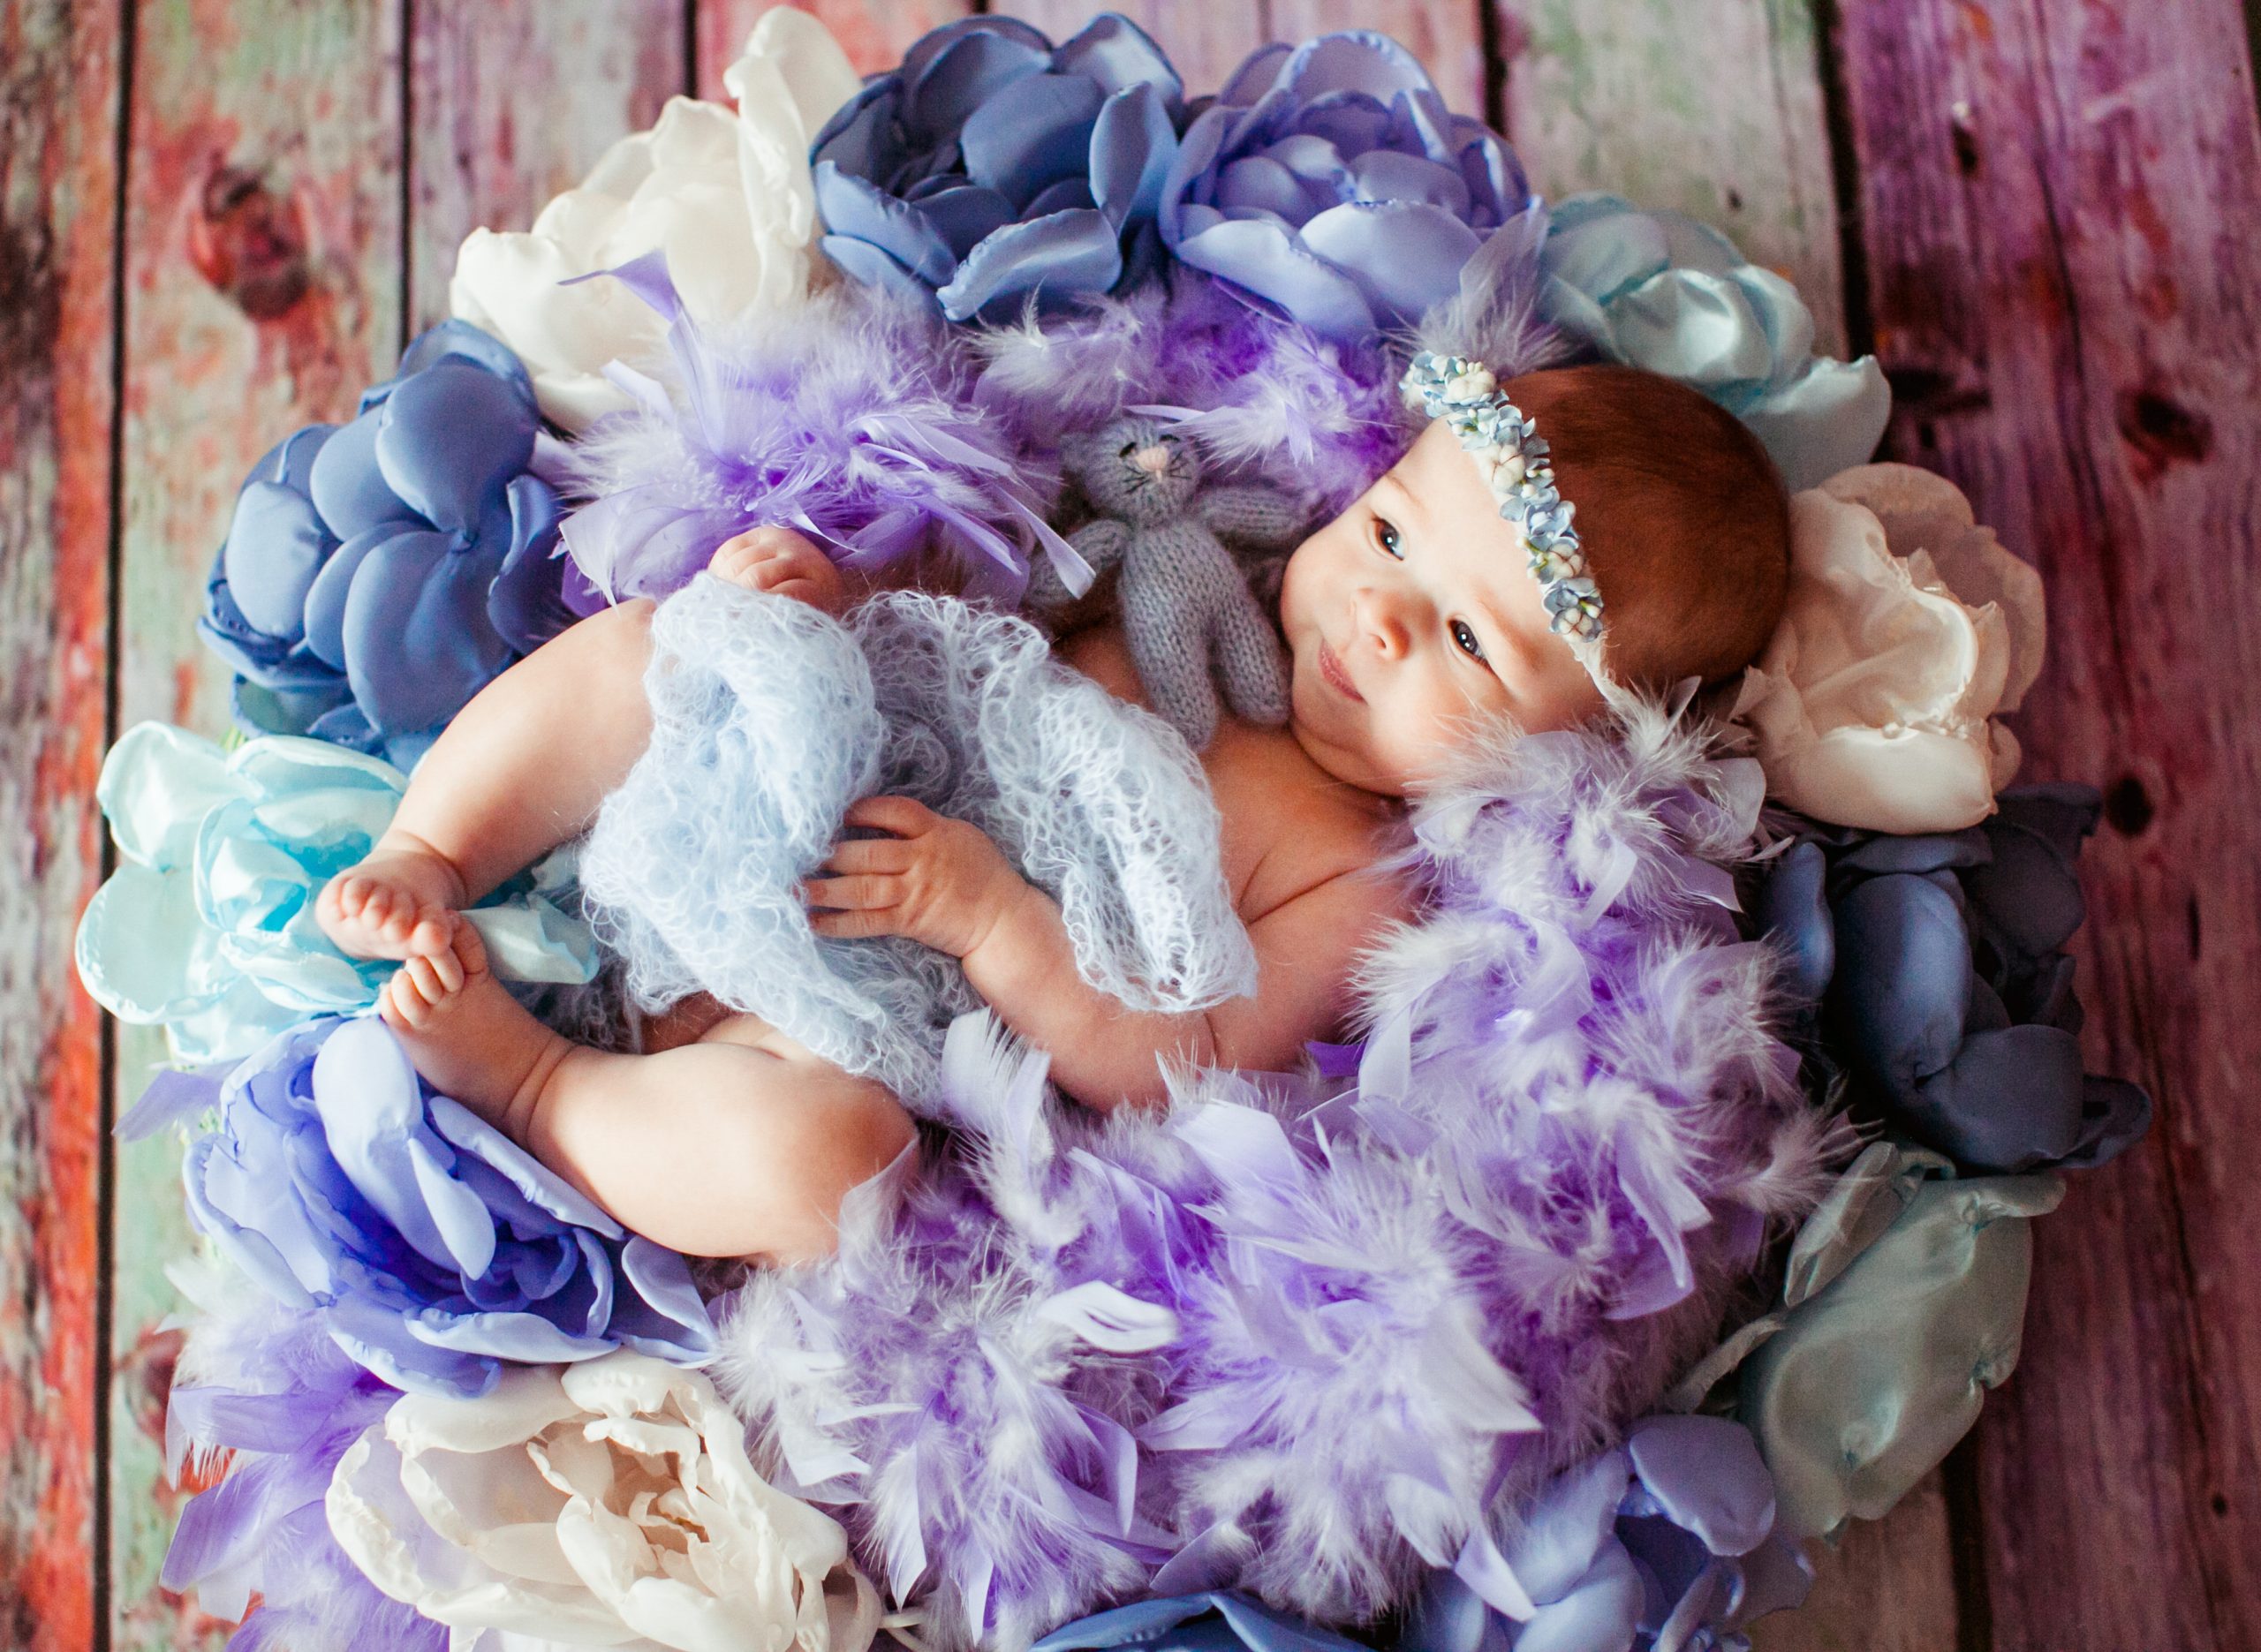 Some Amazing Baby Photoshoot Ideas